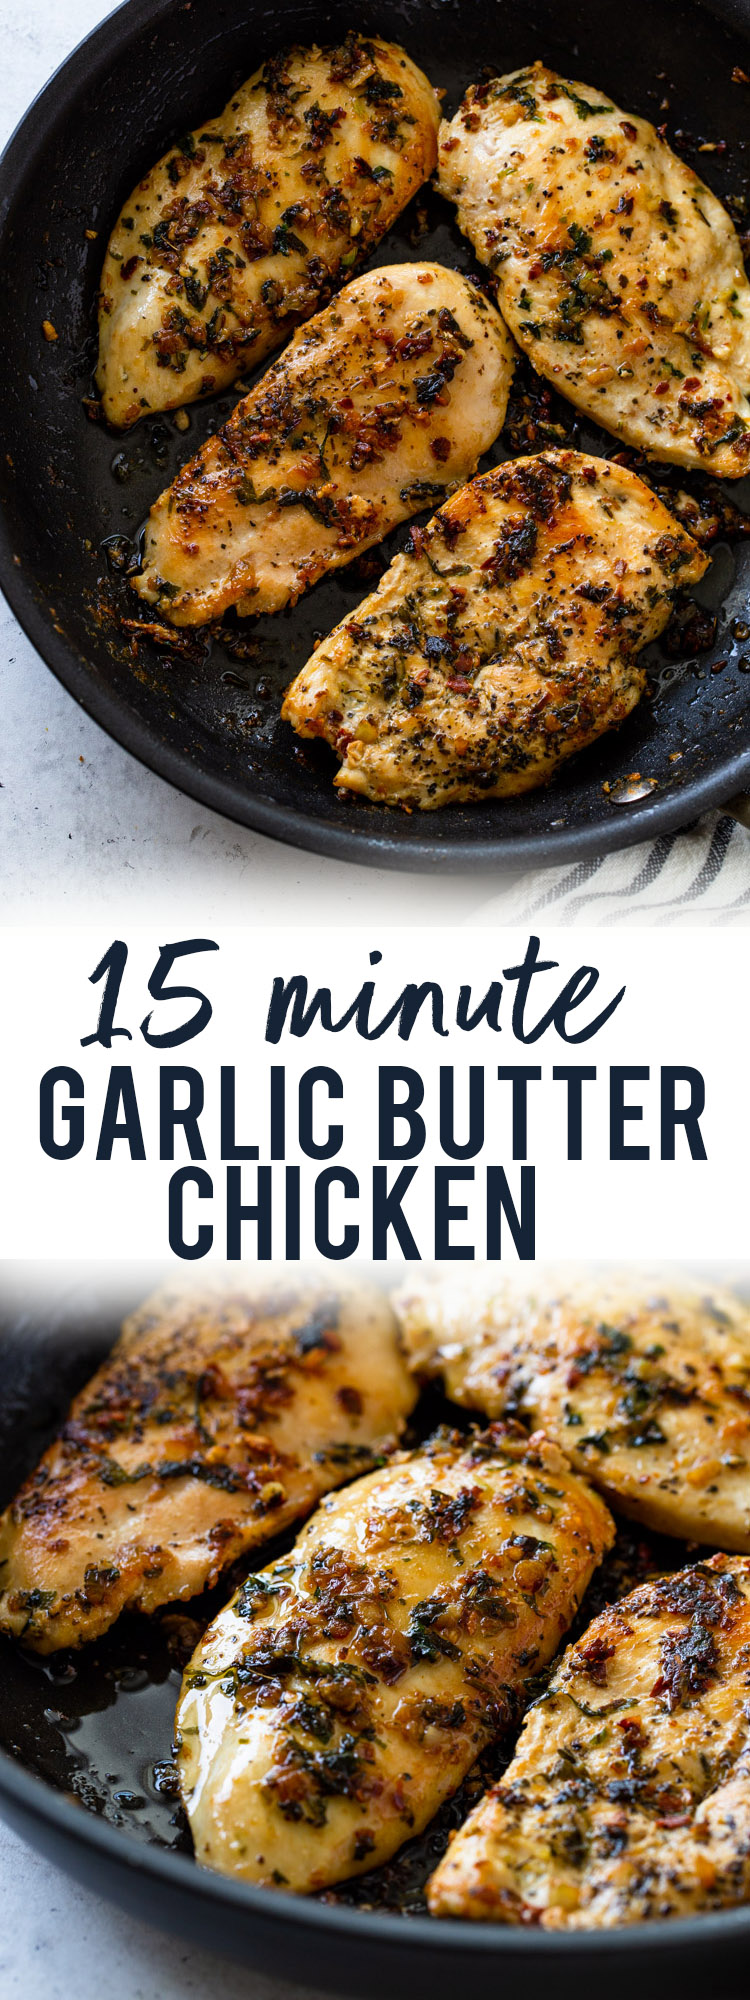 15 Minute Garlic Butter Chicken (Keto)